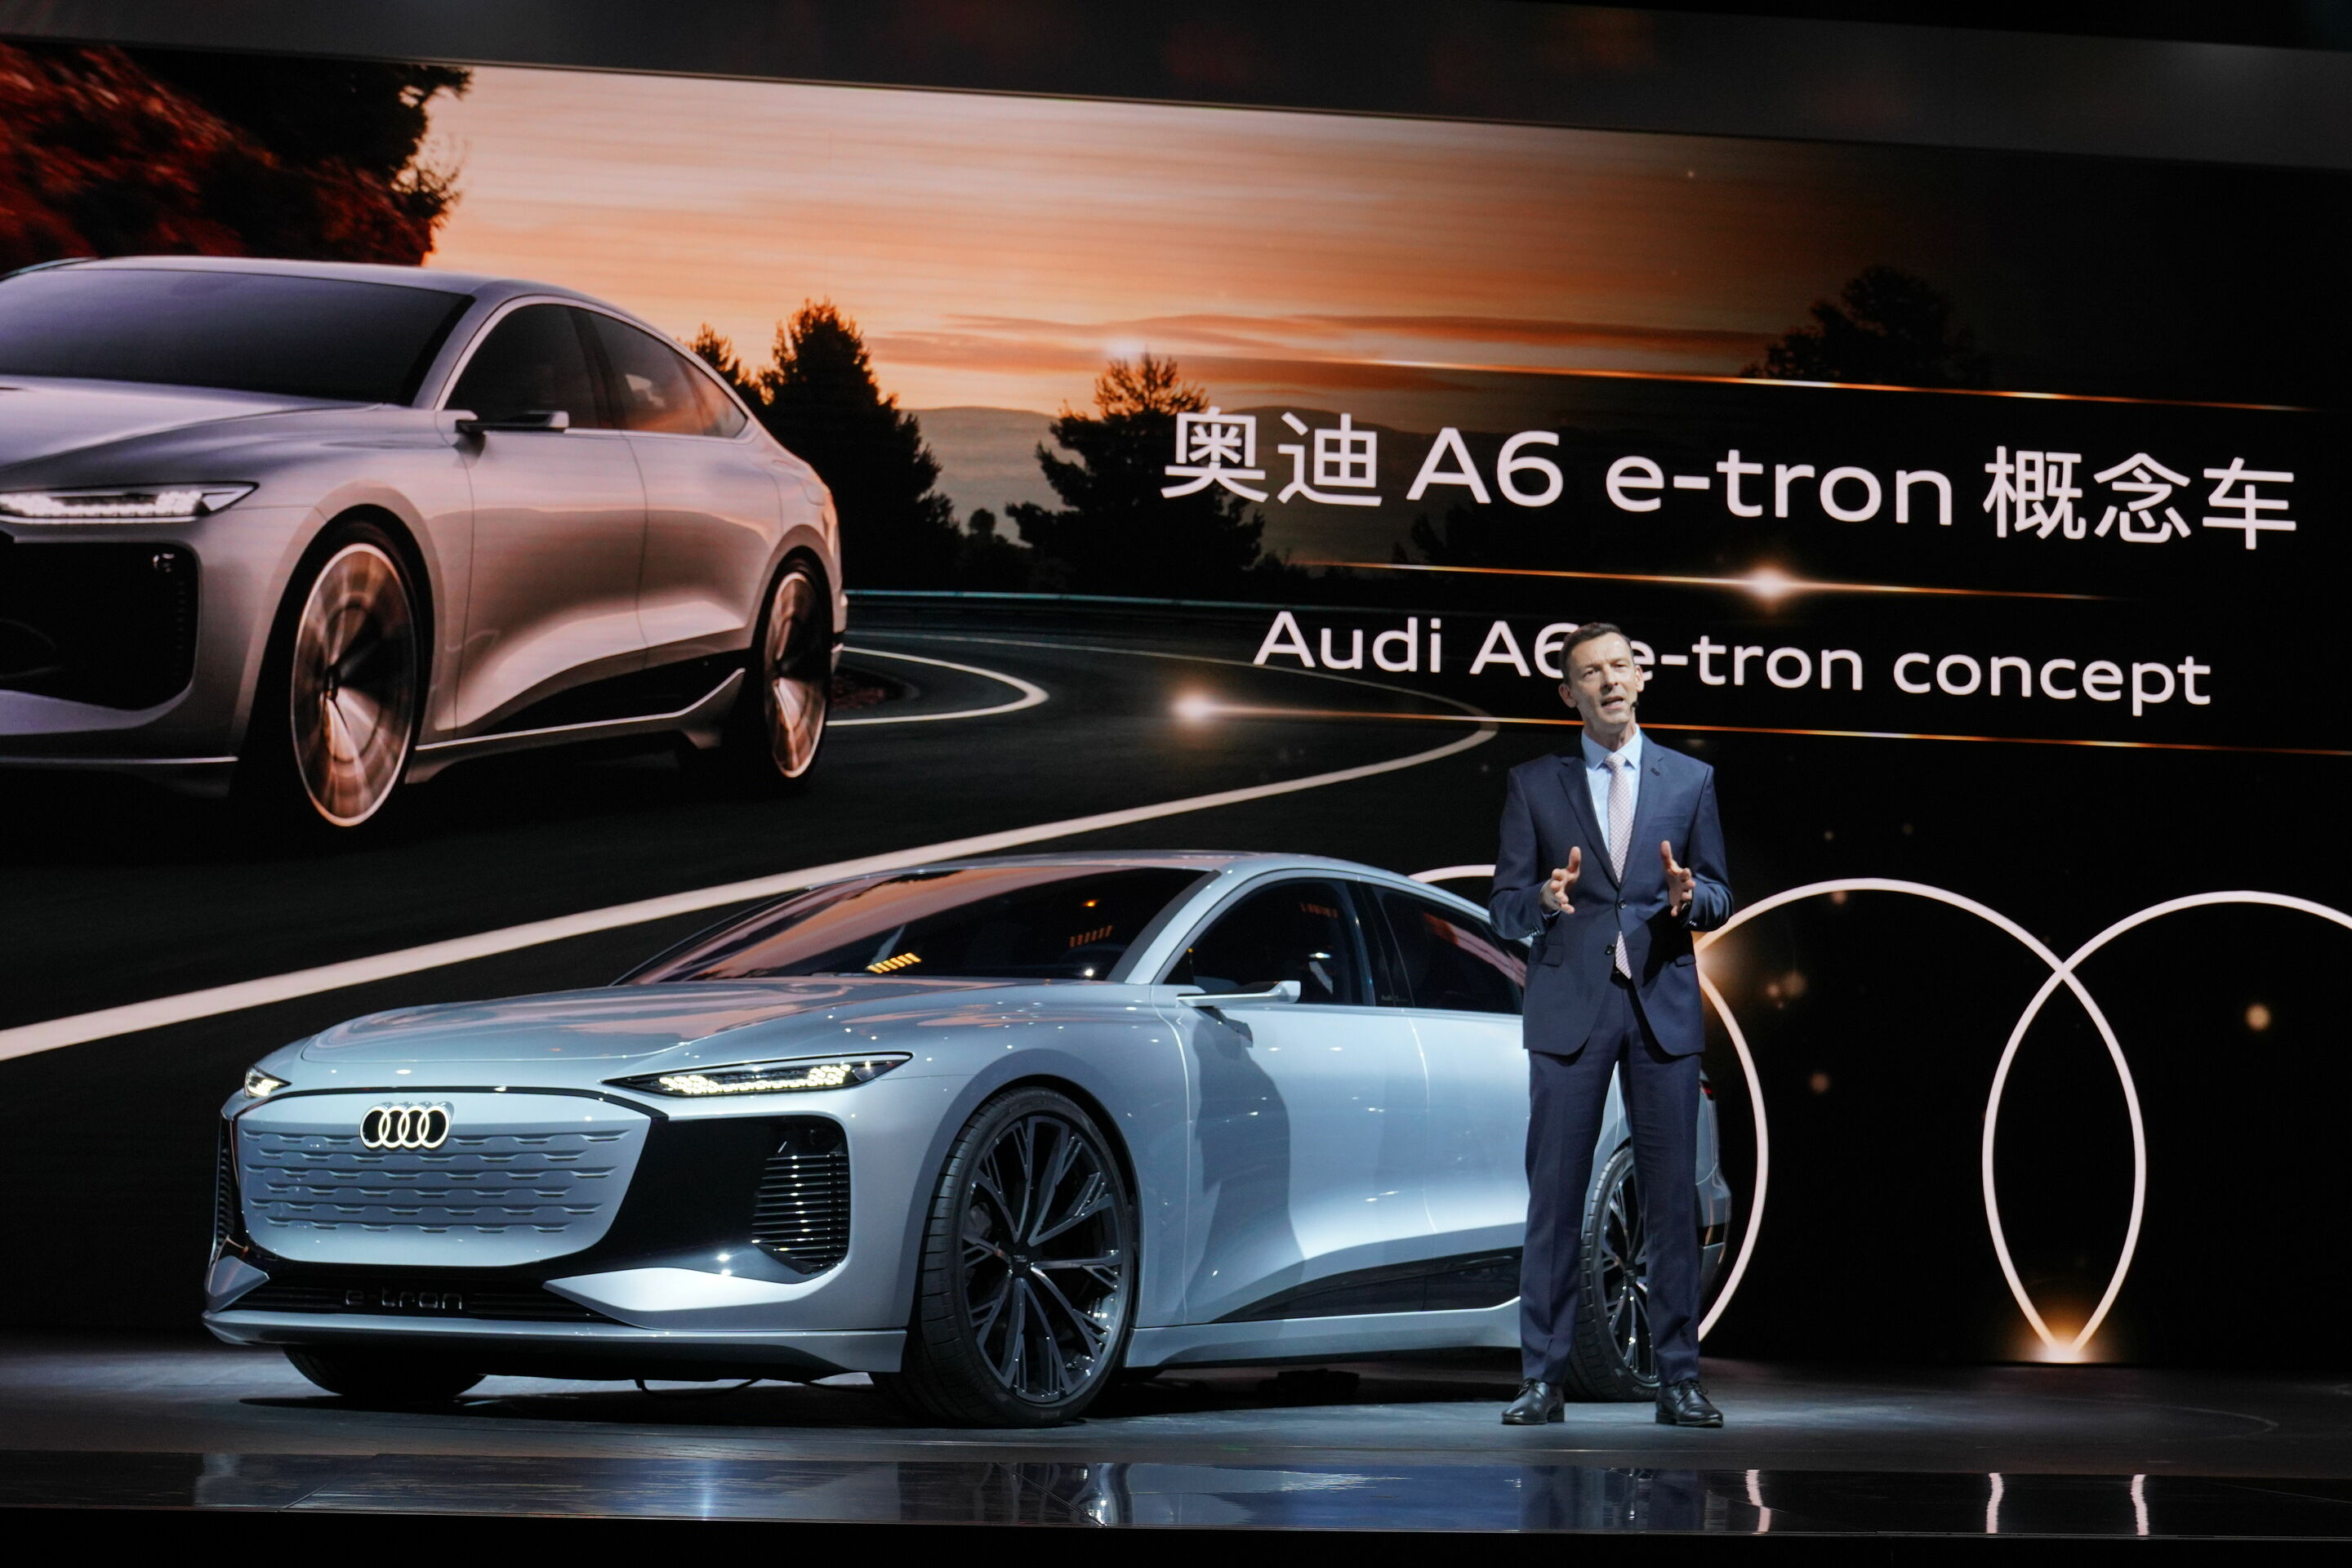 Audi at Auto Shanghai 2021